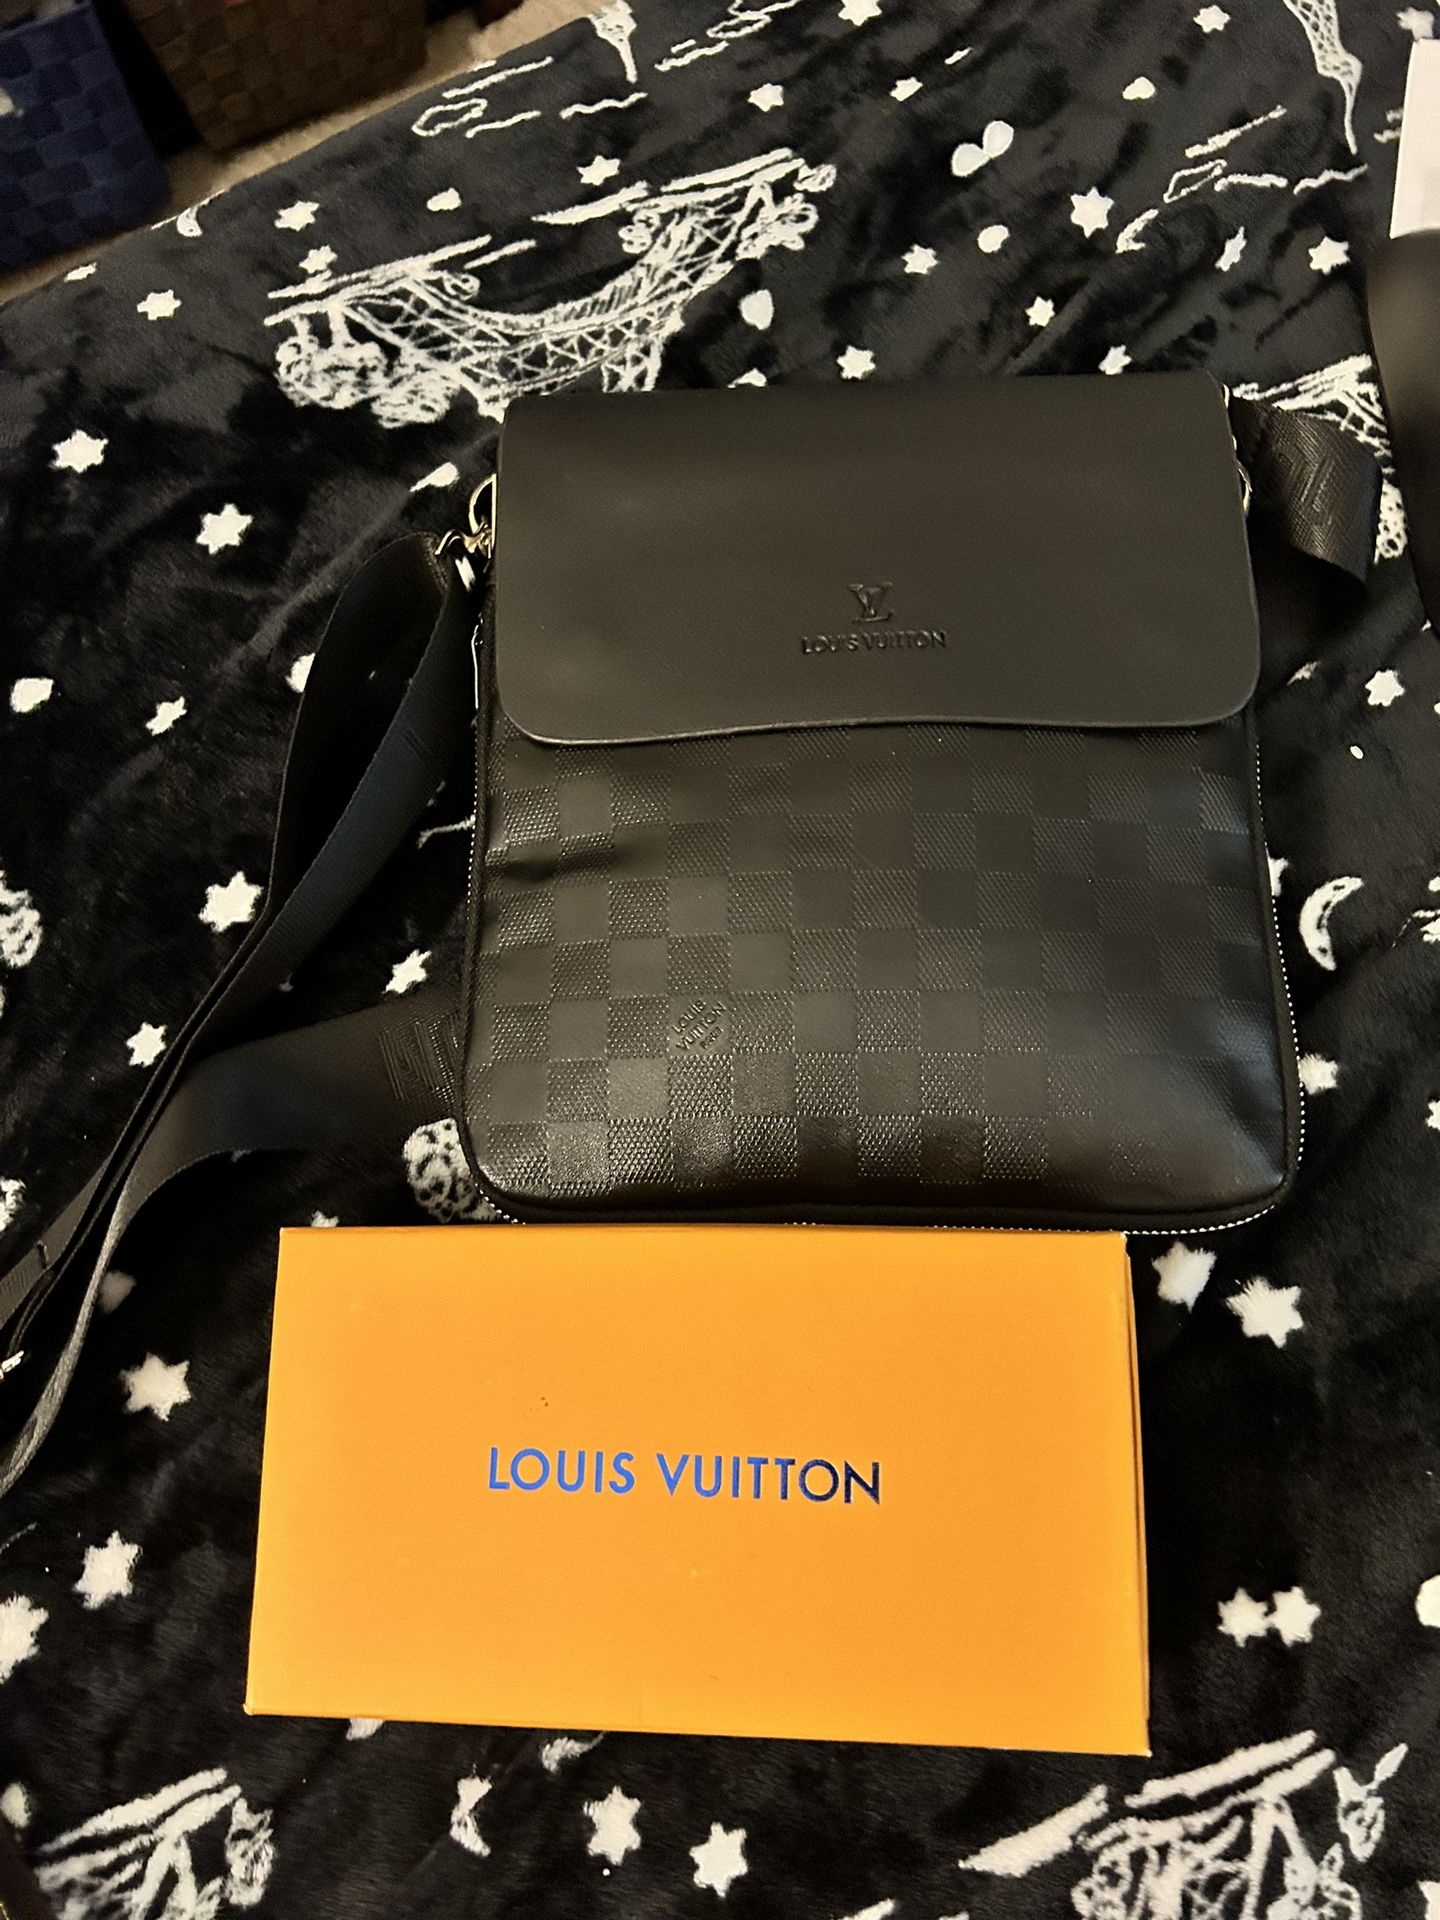 Louis Vittoun Messenger Bag & Universal  Cellphone Holster /wallet